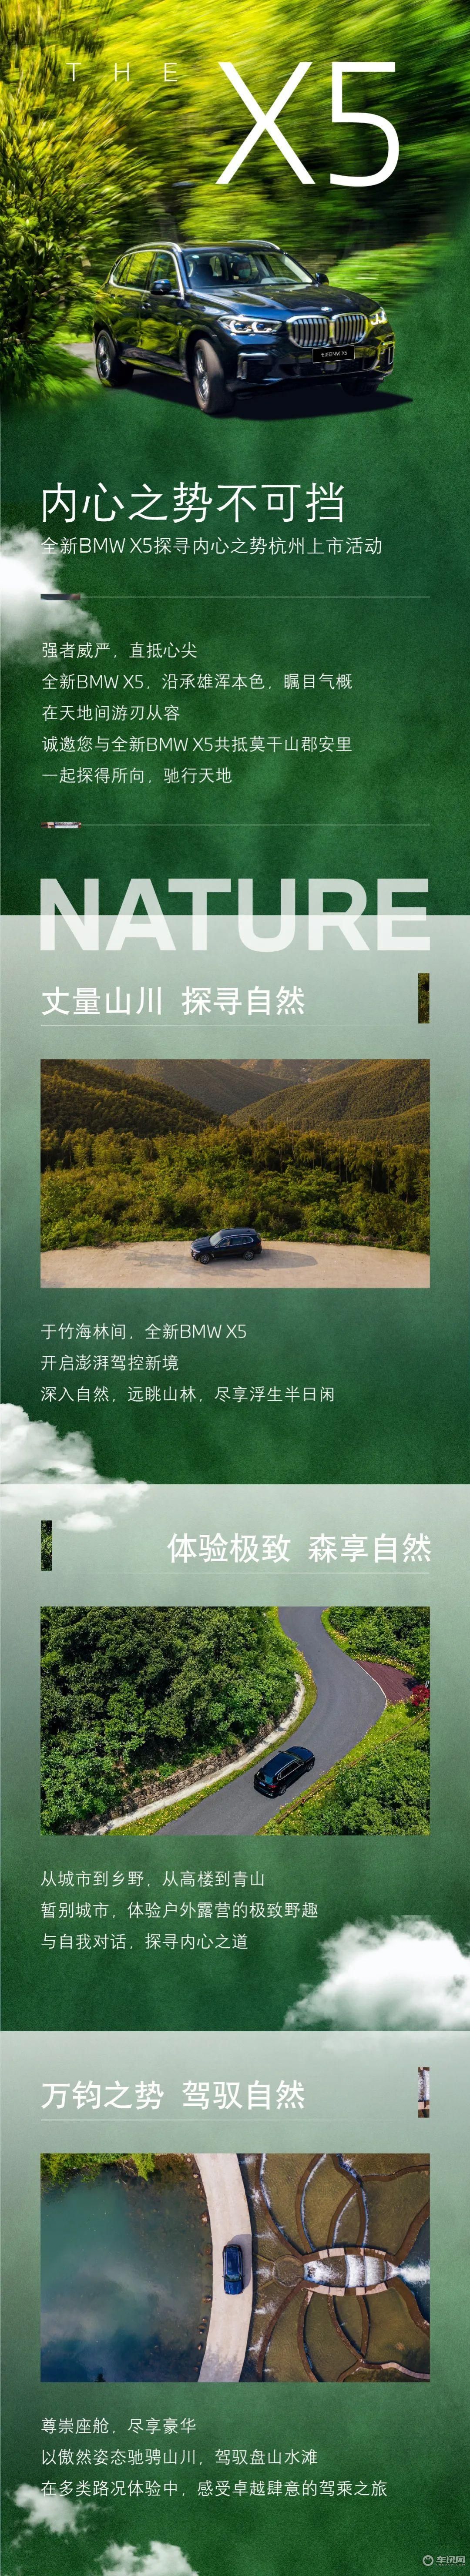 全新BMW X5探寻内心之势杭州上市活动